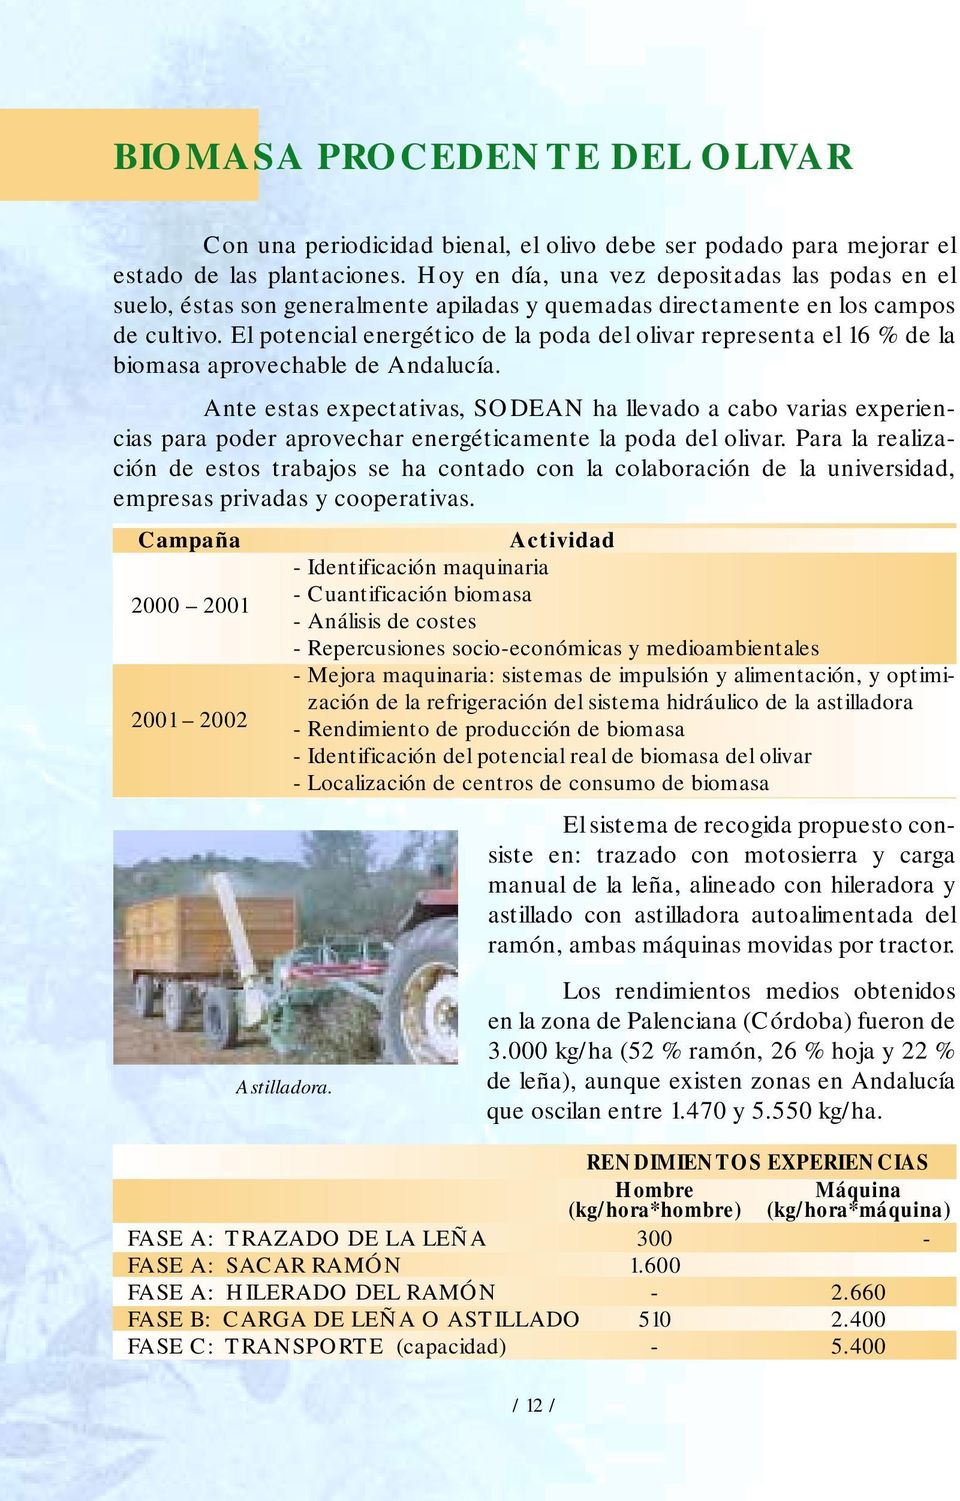 El potencial energético de la poda del olivar representa el 16 % de la biomasa aprovechable de Andalucía.